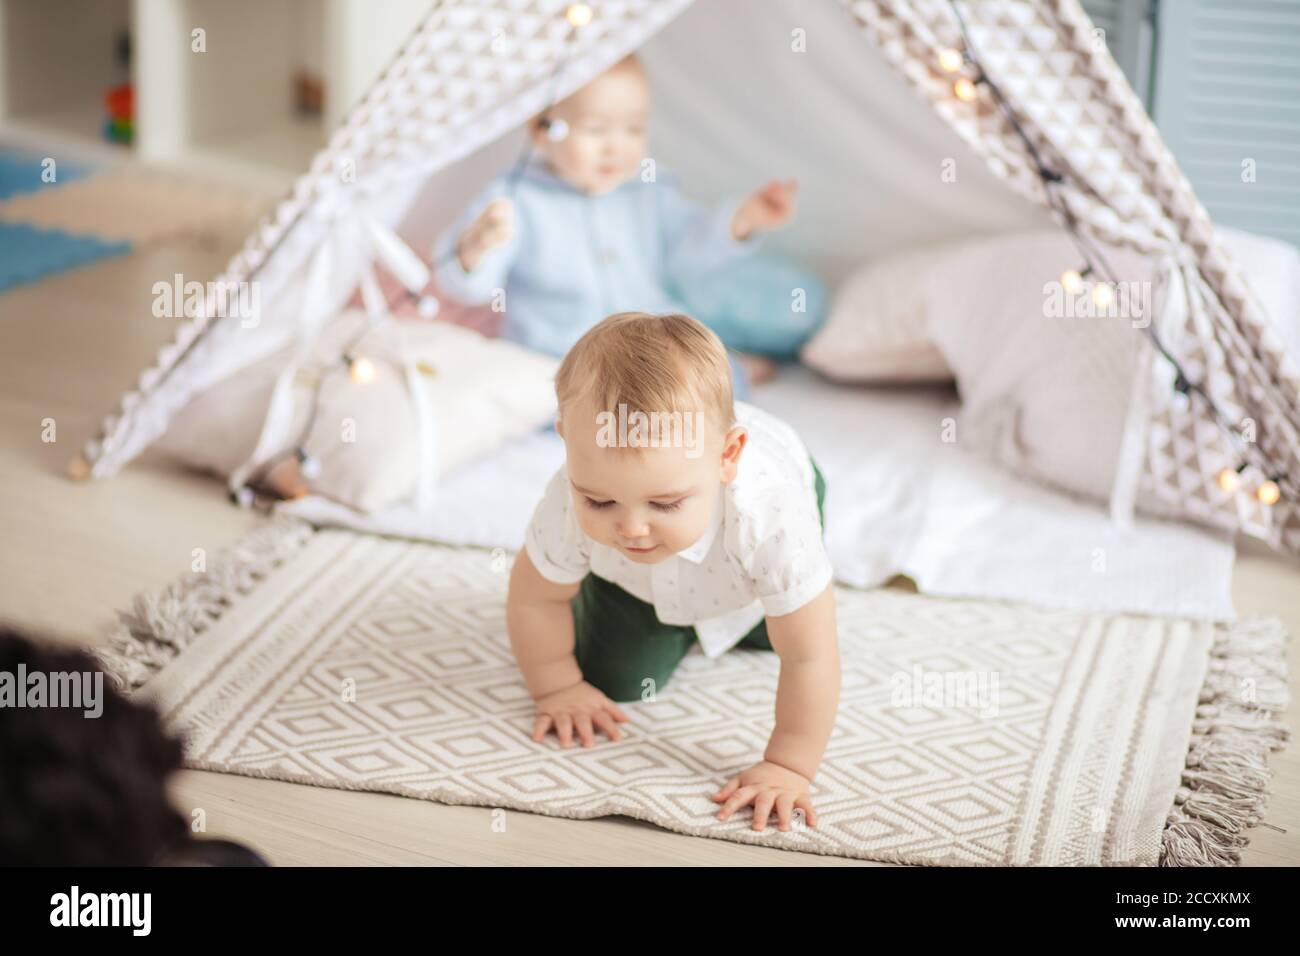 Deux jeunes enfants du même âge s'assoient sur un tapis dans une tente à tipi, s'amusent et jouent avec des guirlandes de Noël dans une chambre confortable. Banque D'Images